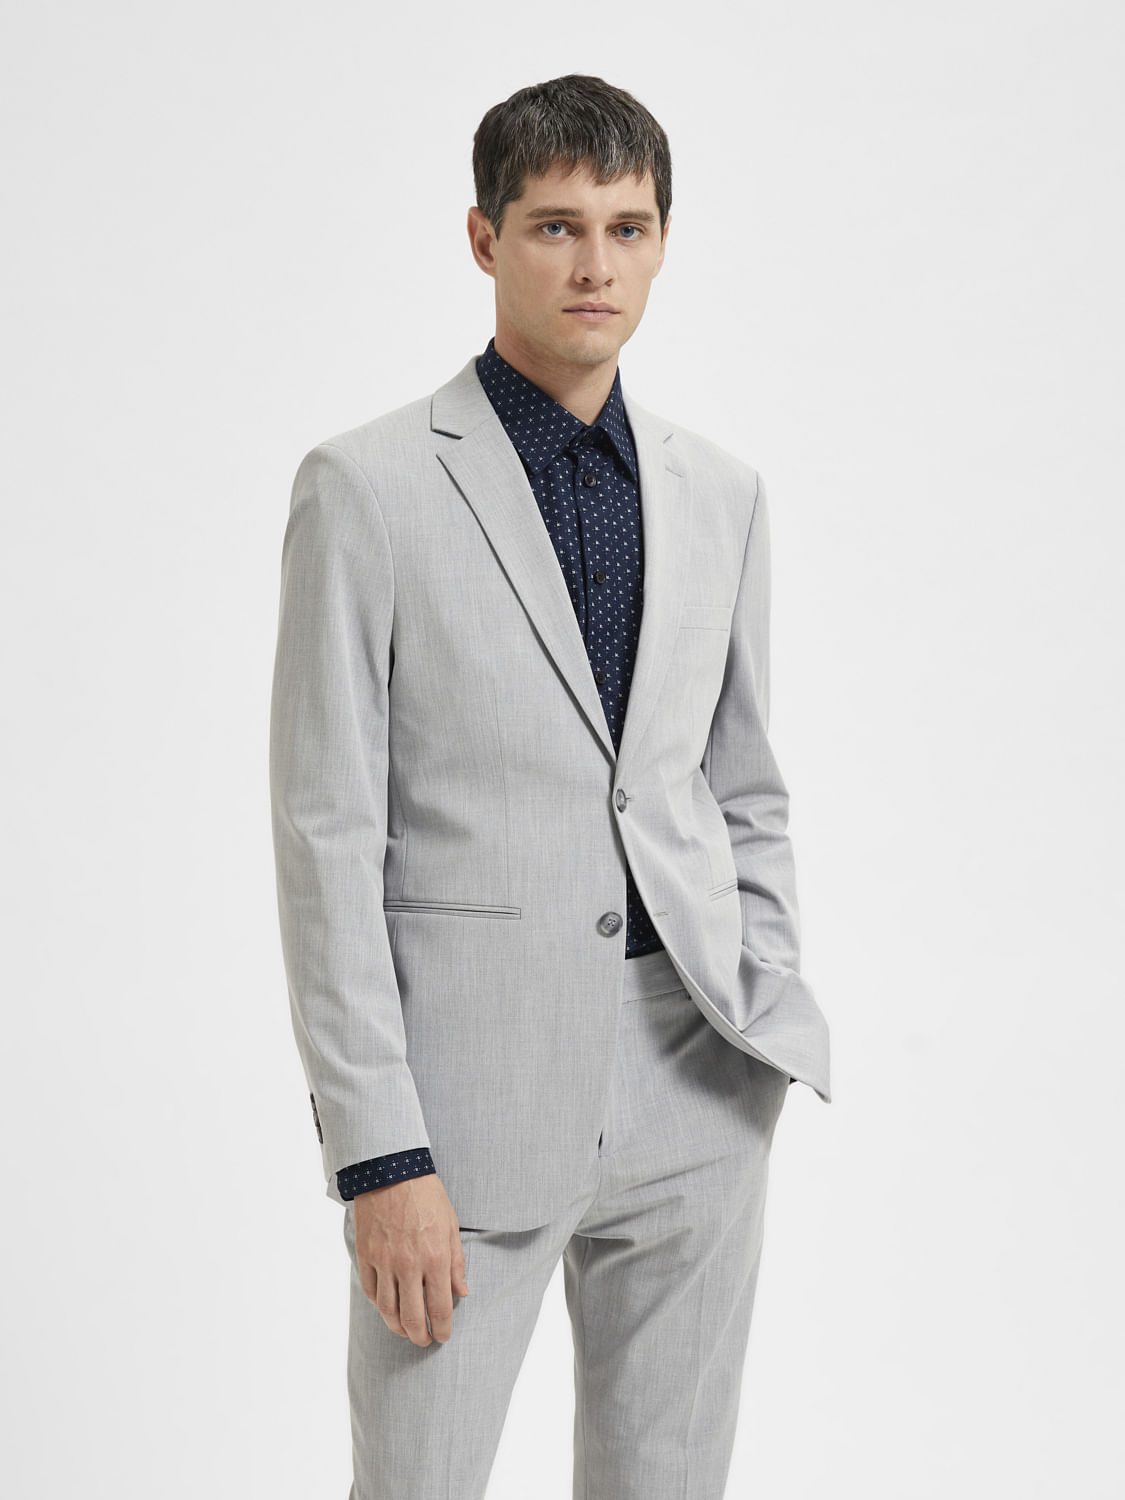 Beige Suit for Men, 3 Piece Suit for Groom and Groomsmen, Formal Wear for  Prom, Dinner, Party Wear, Dinner, Office Wear, Bespoke Wear. - Etsy Israel